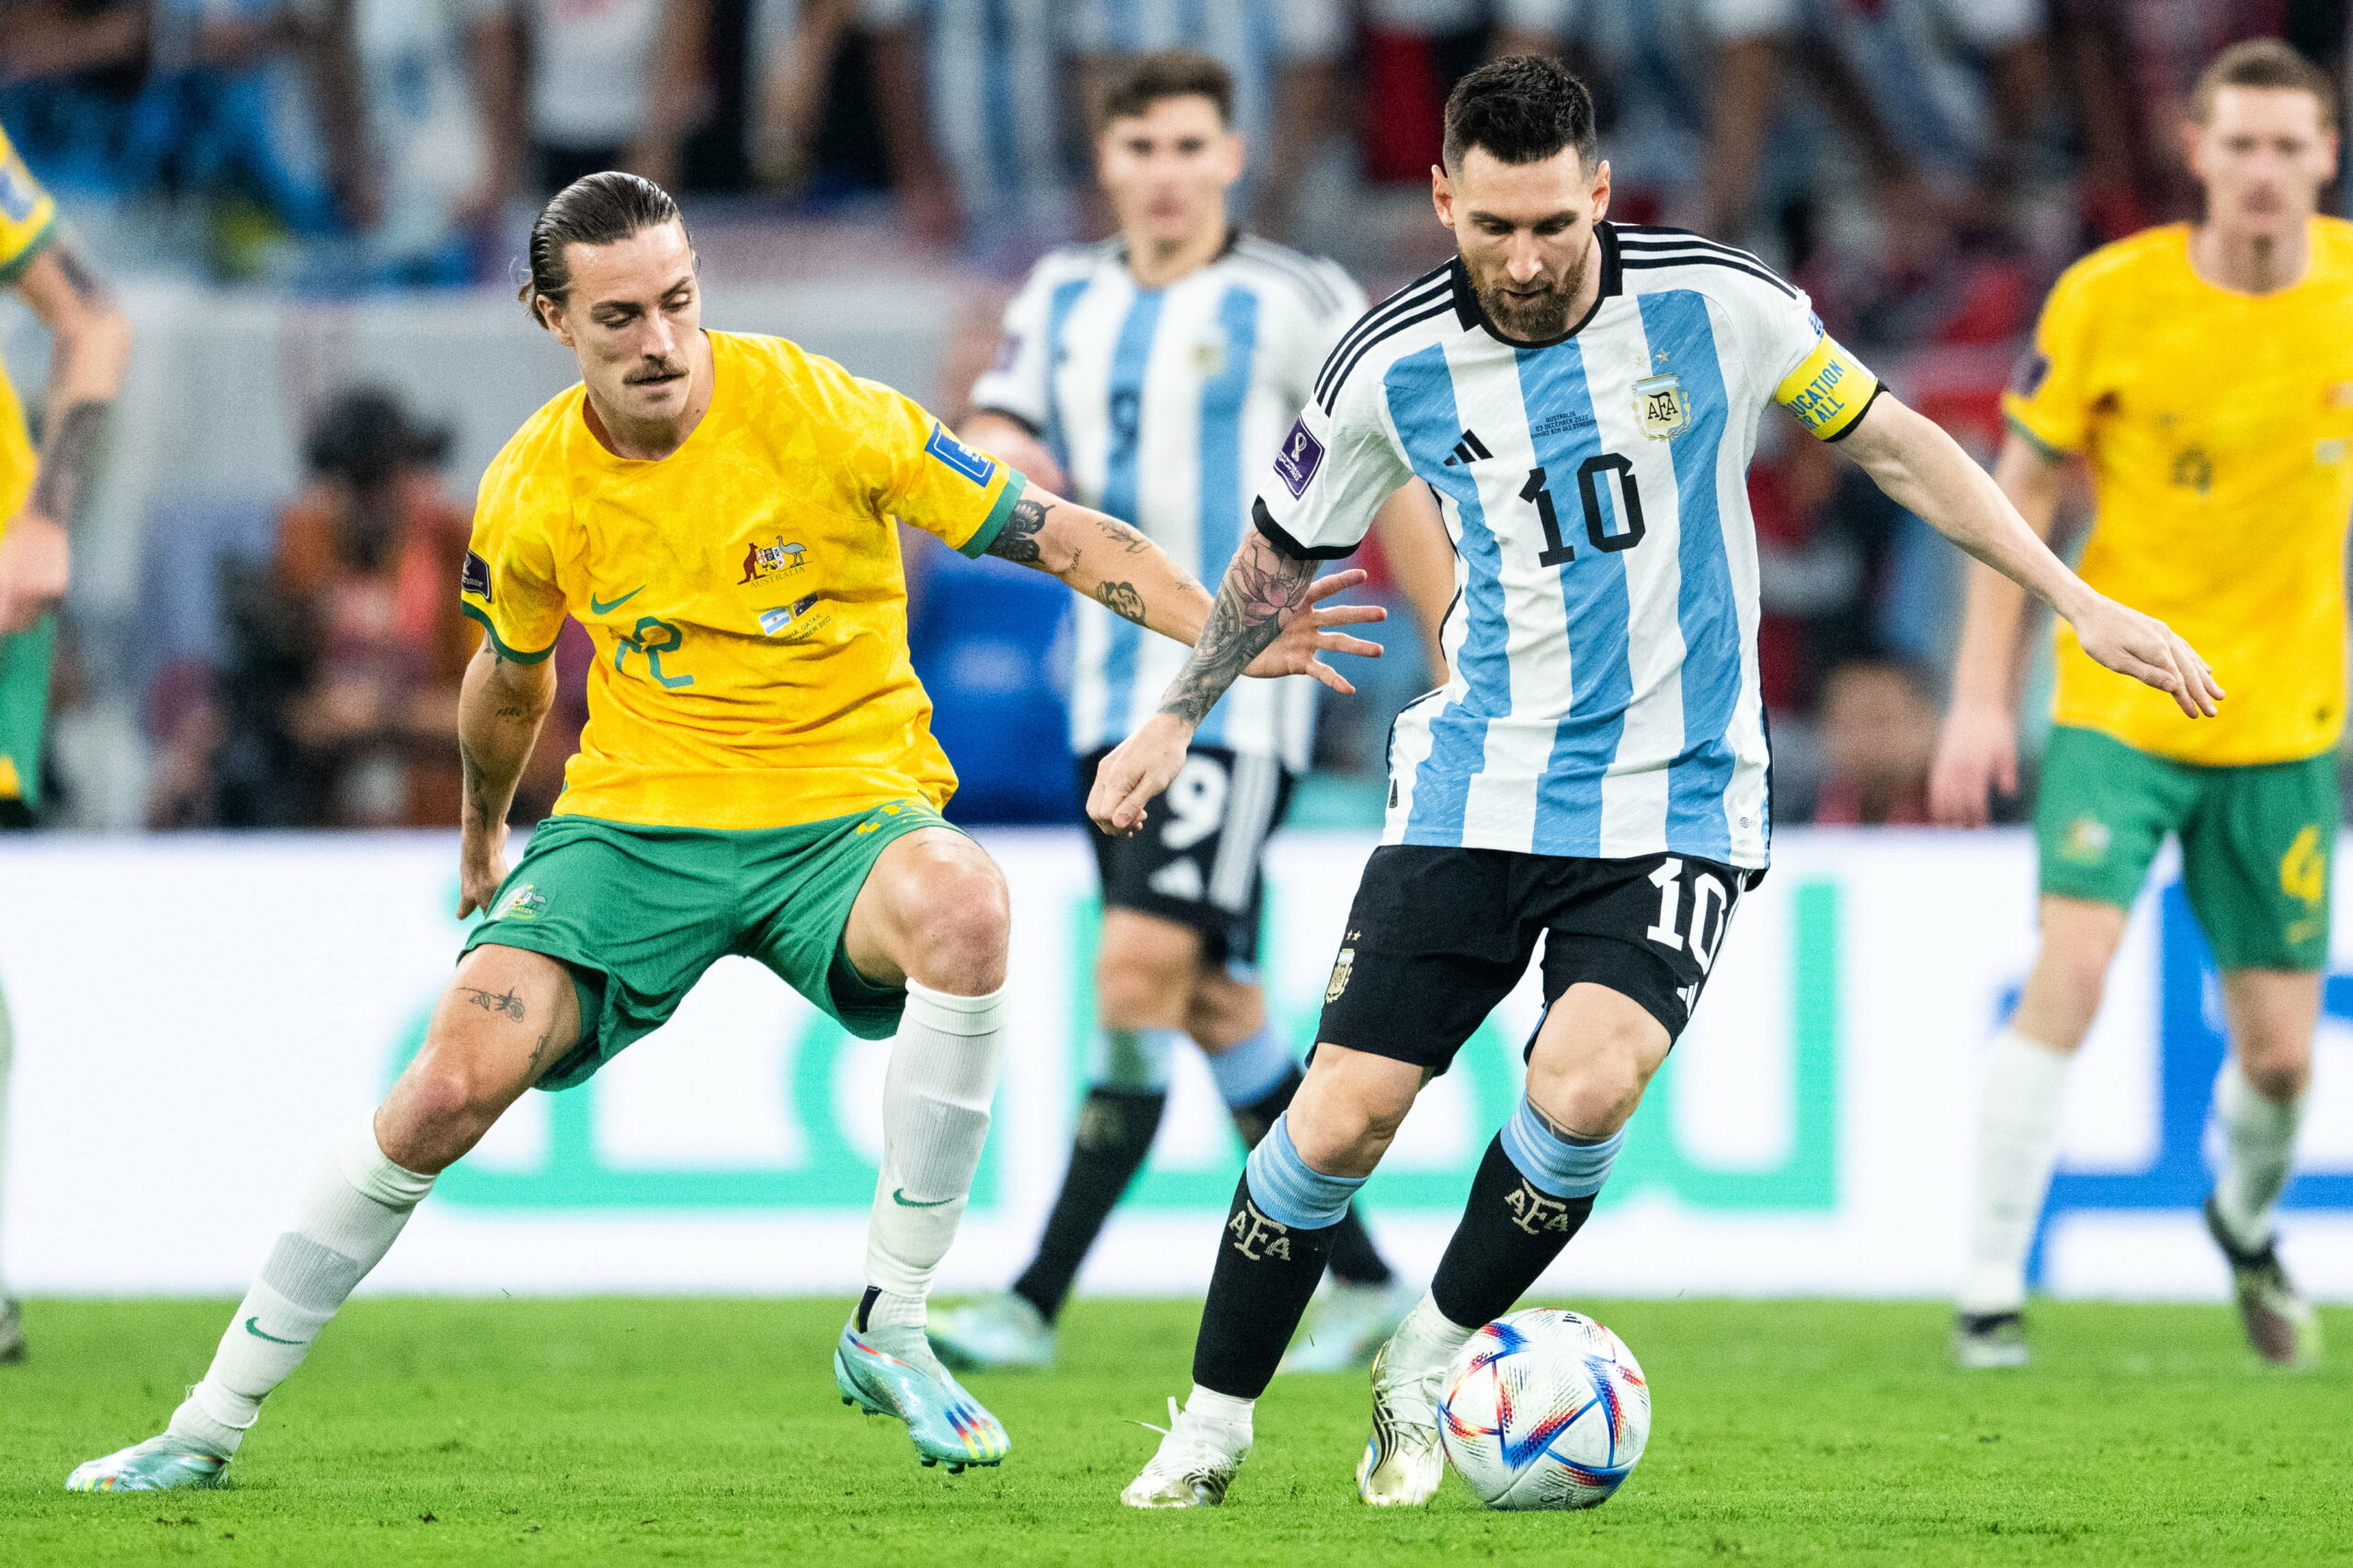 St. Paulis Jackson Irvine schied im WM-Achtelfinale gegen Lionel Messis Argentinier aus